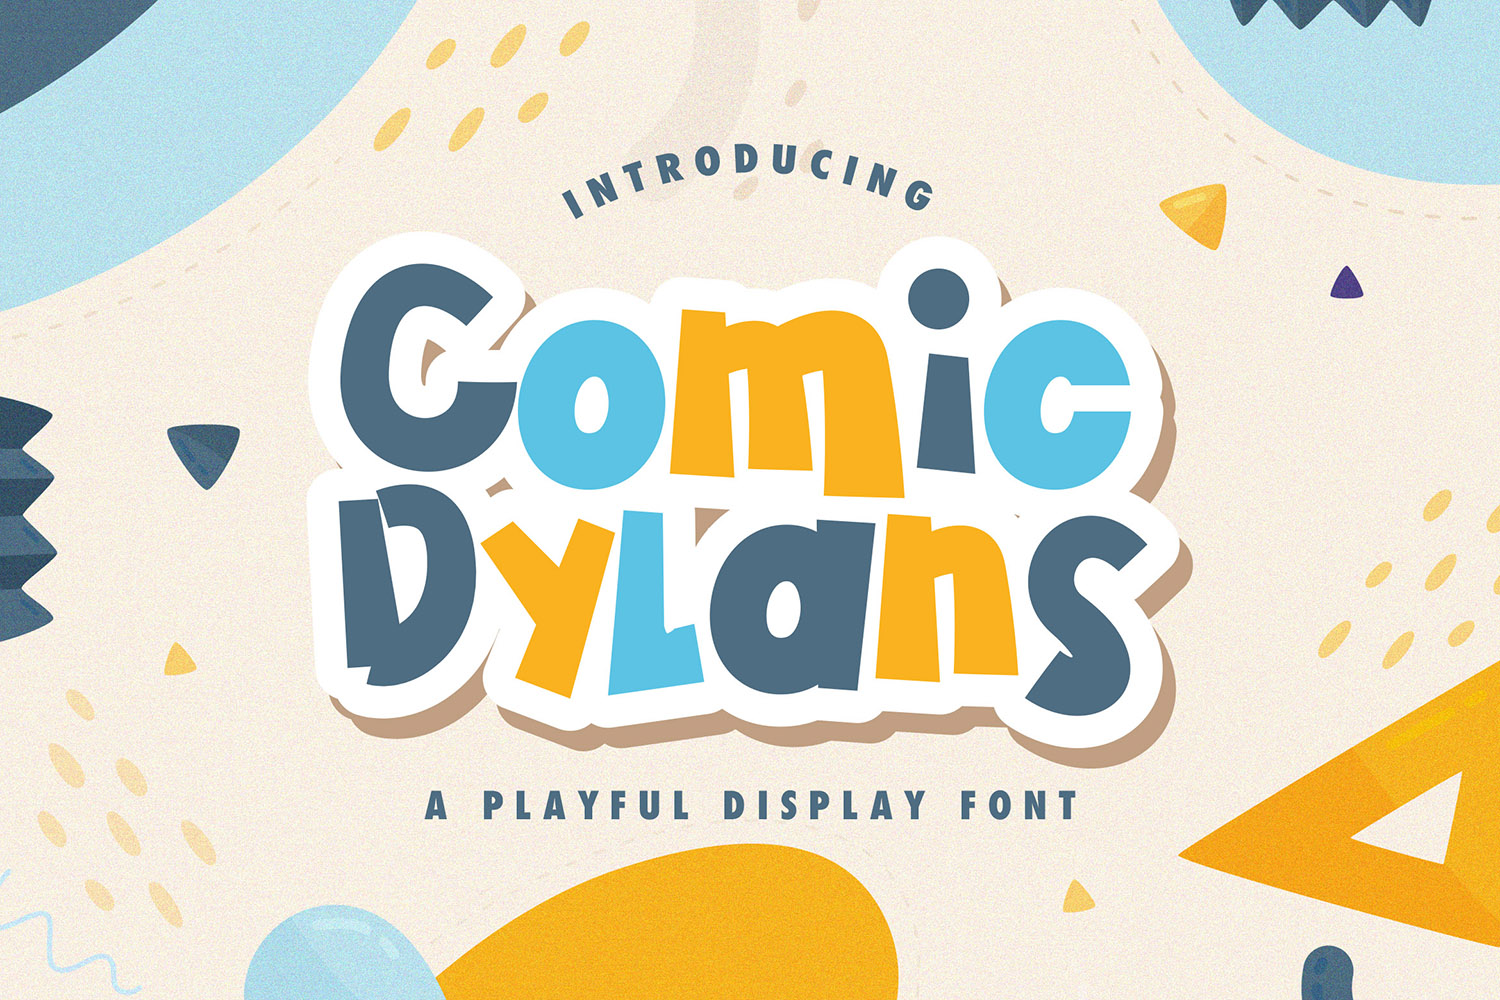 Comic Dylans Free Font